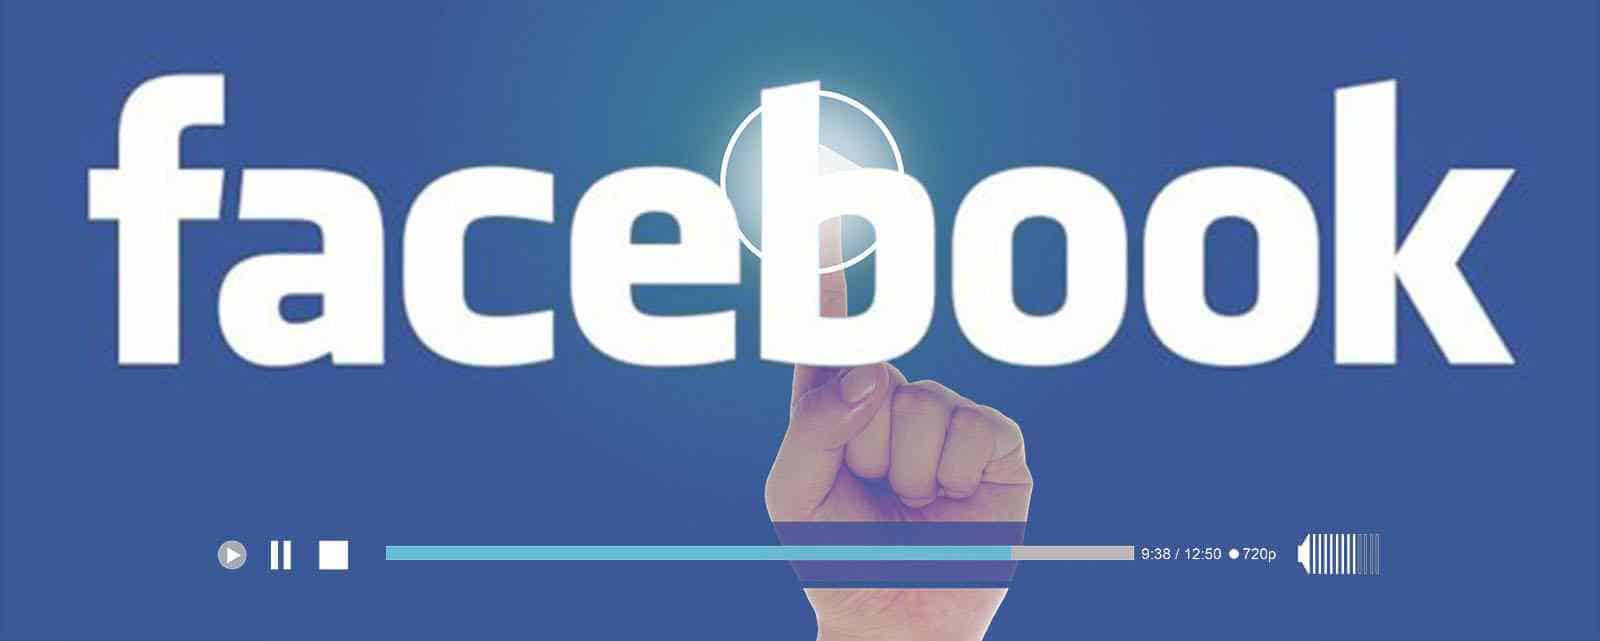 Vídeos públicos y privados de Facebook